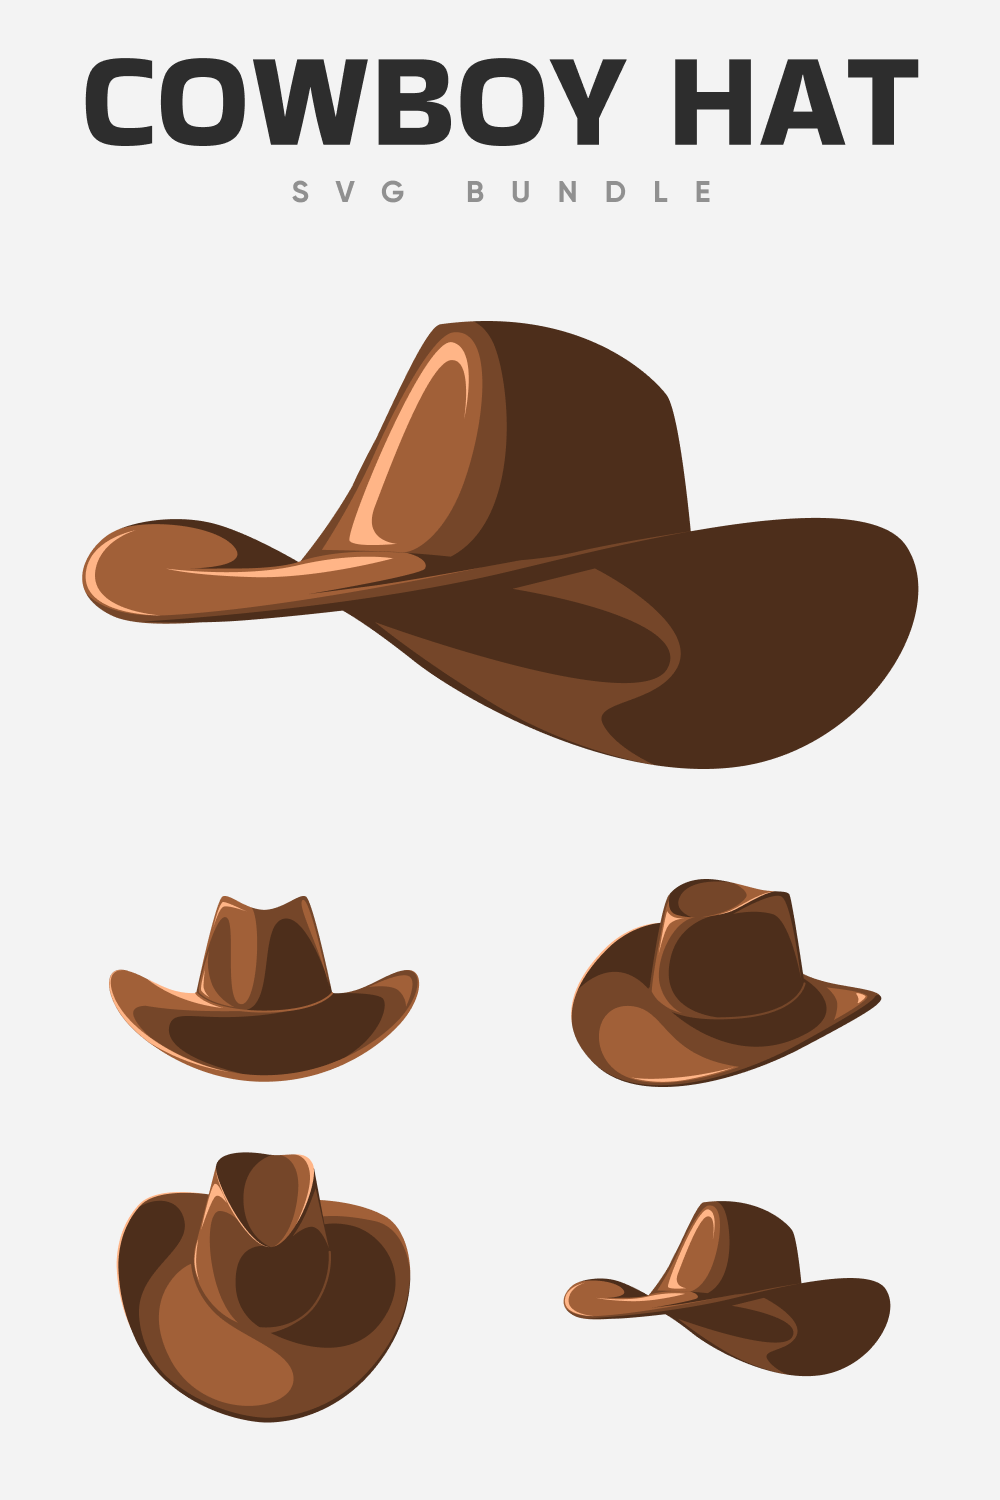 Cowboy hat SVG bundle.